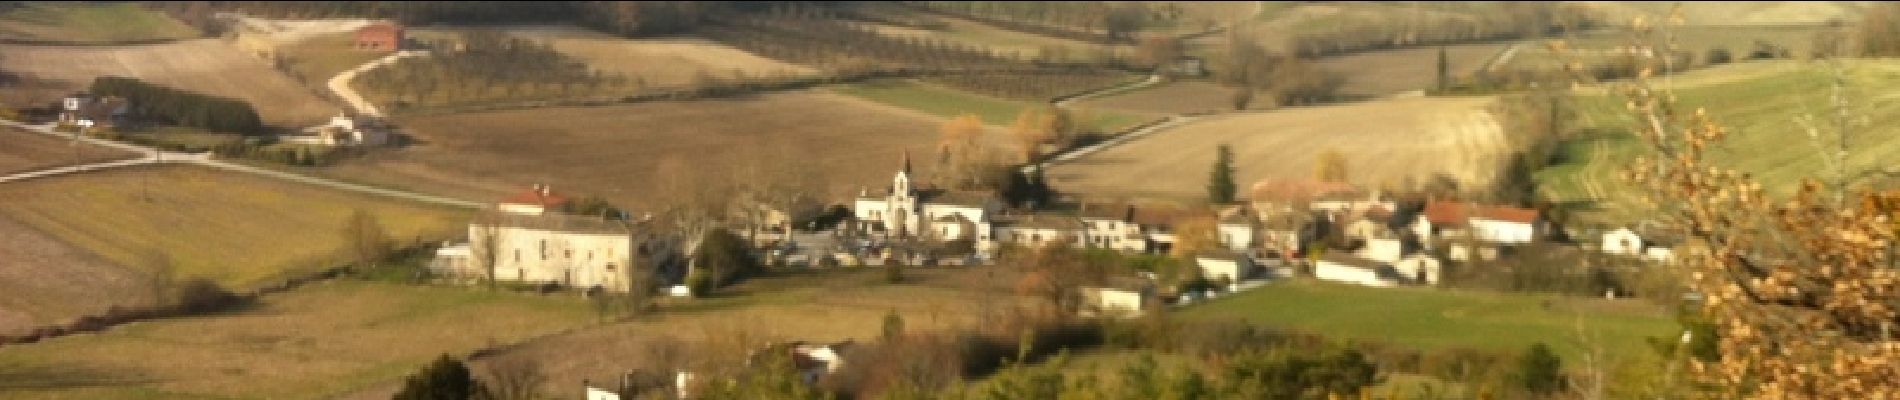 Randonnée V.T.T. Barguelonne-en-Quercy - Circuit sur les chemins blancs de Bagat - Balat en Quercy - Photo